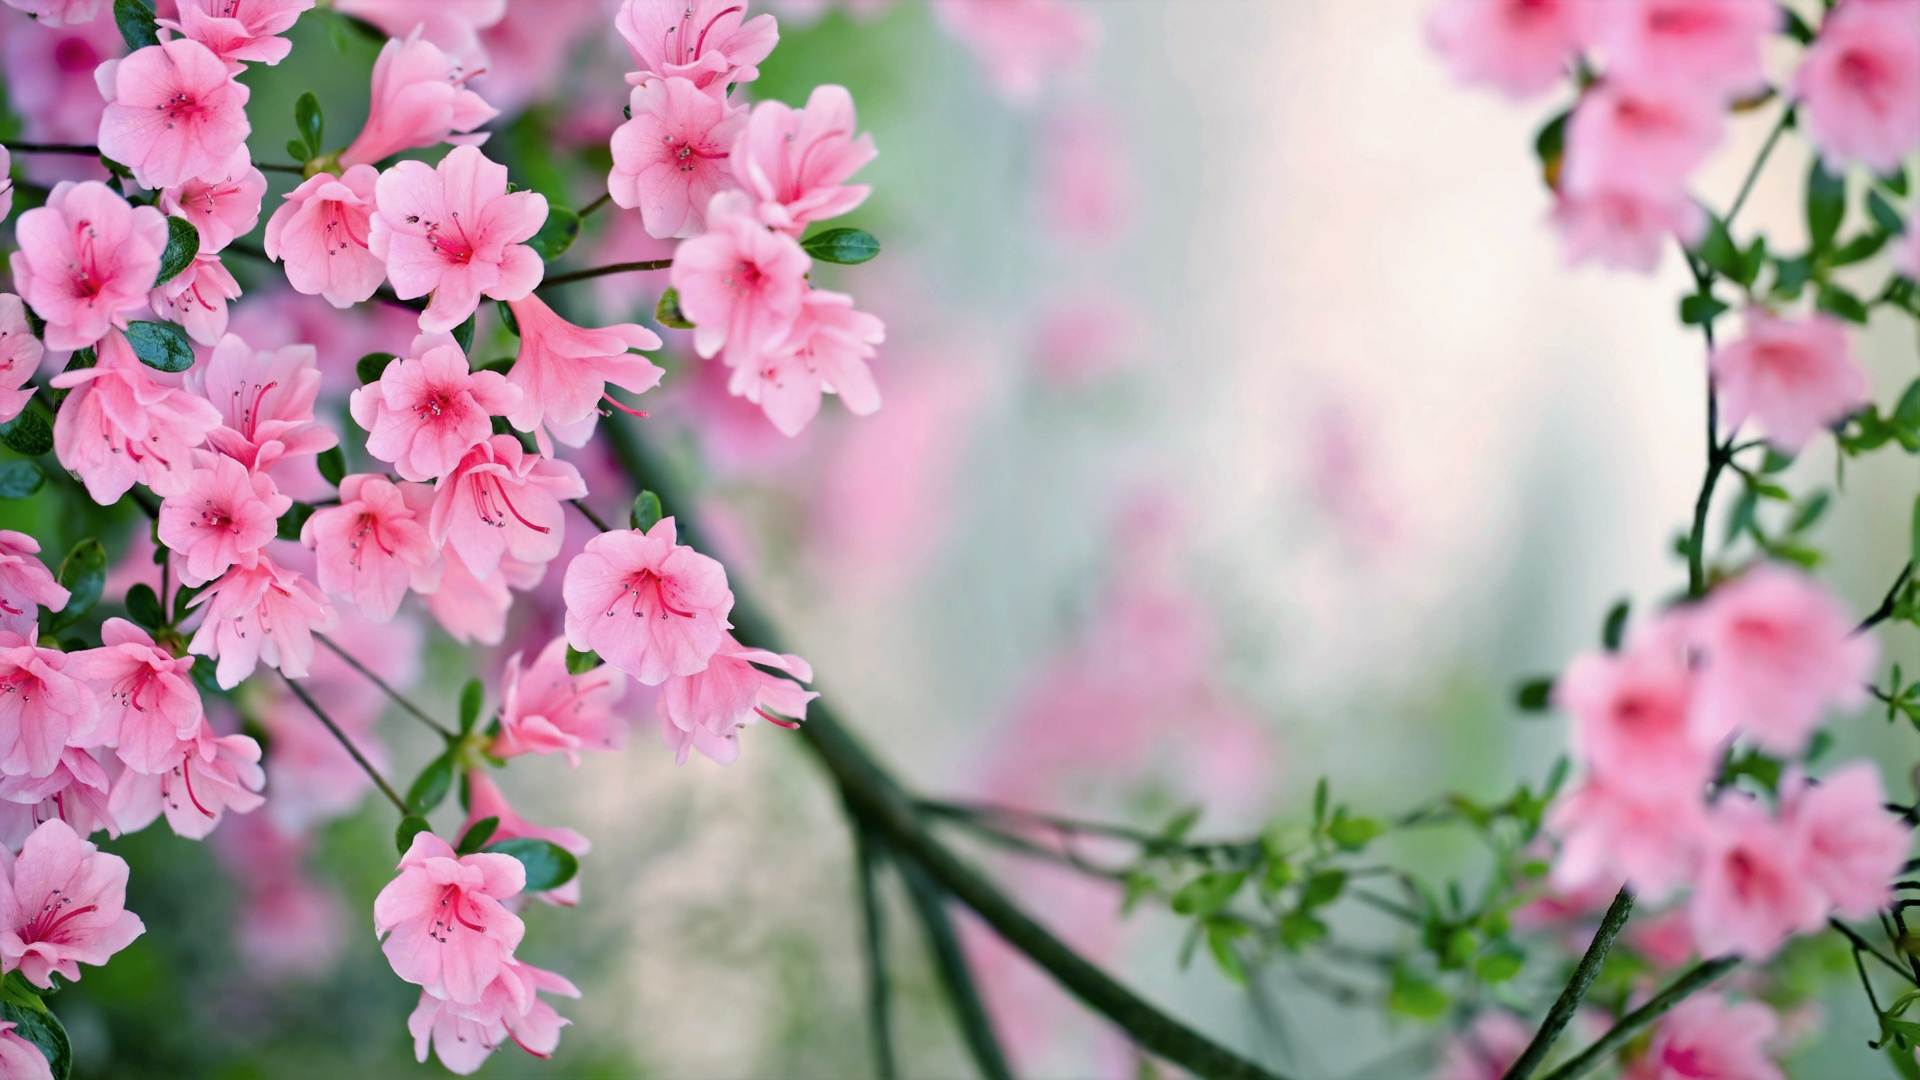 Mùa hoa đào đã đến! Sắc hồng rực rỡ của những cánh hoa đào nở rộ đang làm cho mùa xuân trở nên tươi đẹp hơn bao giờ hết. Hãy cùng chiêm ngưỡng những hình ảnh đẹp nhất về hoa đào và cảm nhận sự thanh thản và yên bình của mùa xuân.